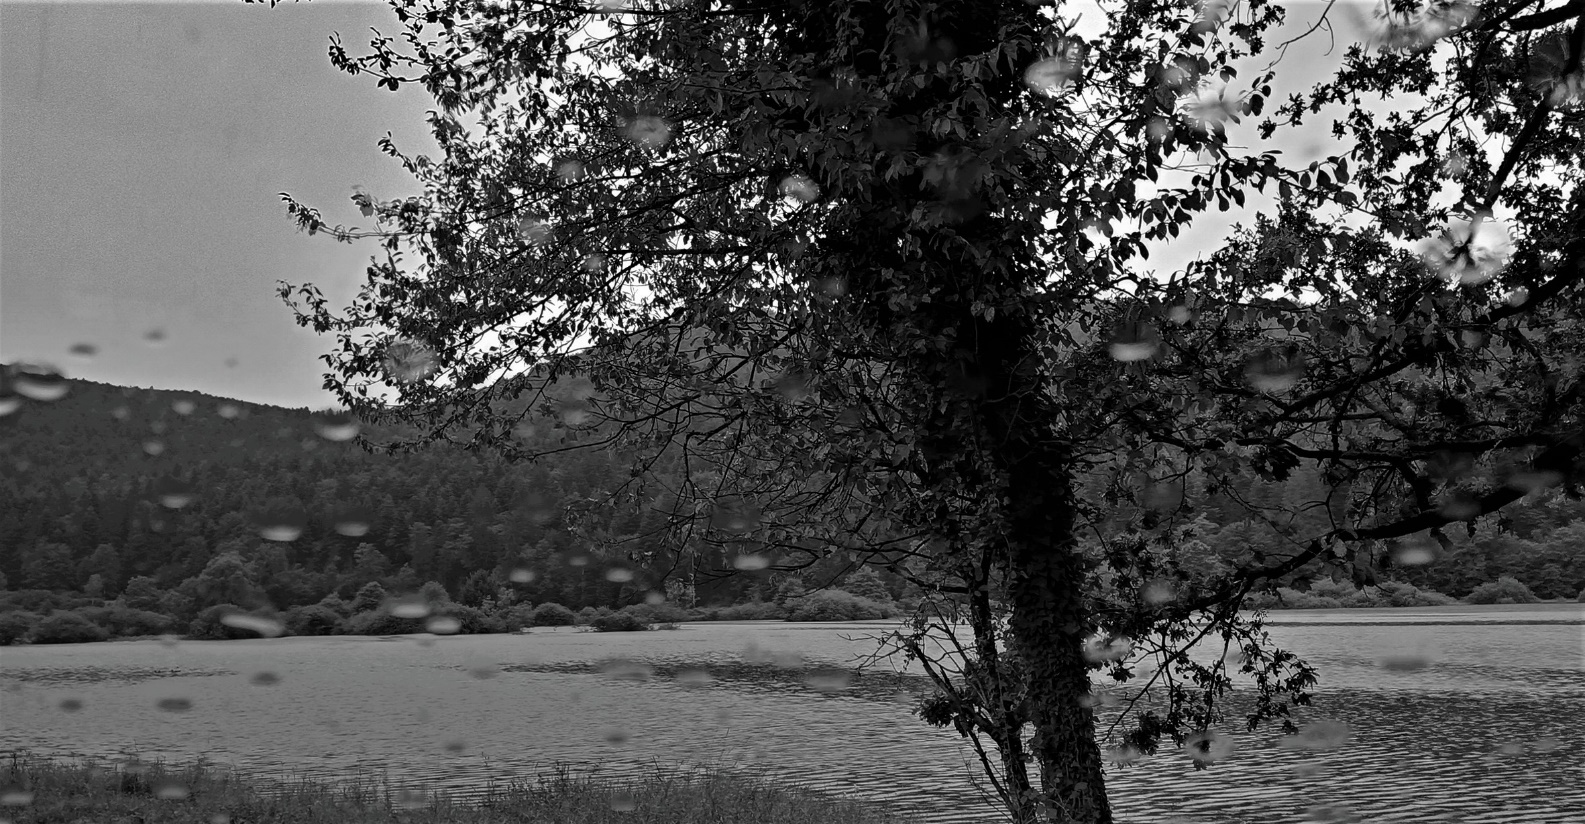 Slika, ki vsebuje besede na prostem, drevo, črno-bela fotografija, narava

Opis je samodejno ustvarjen